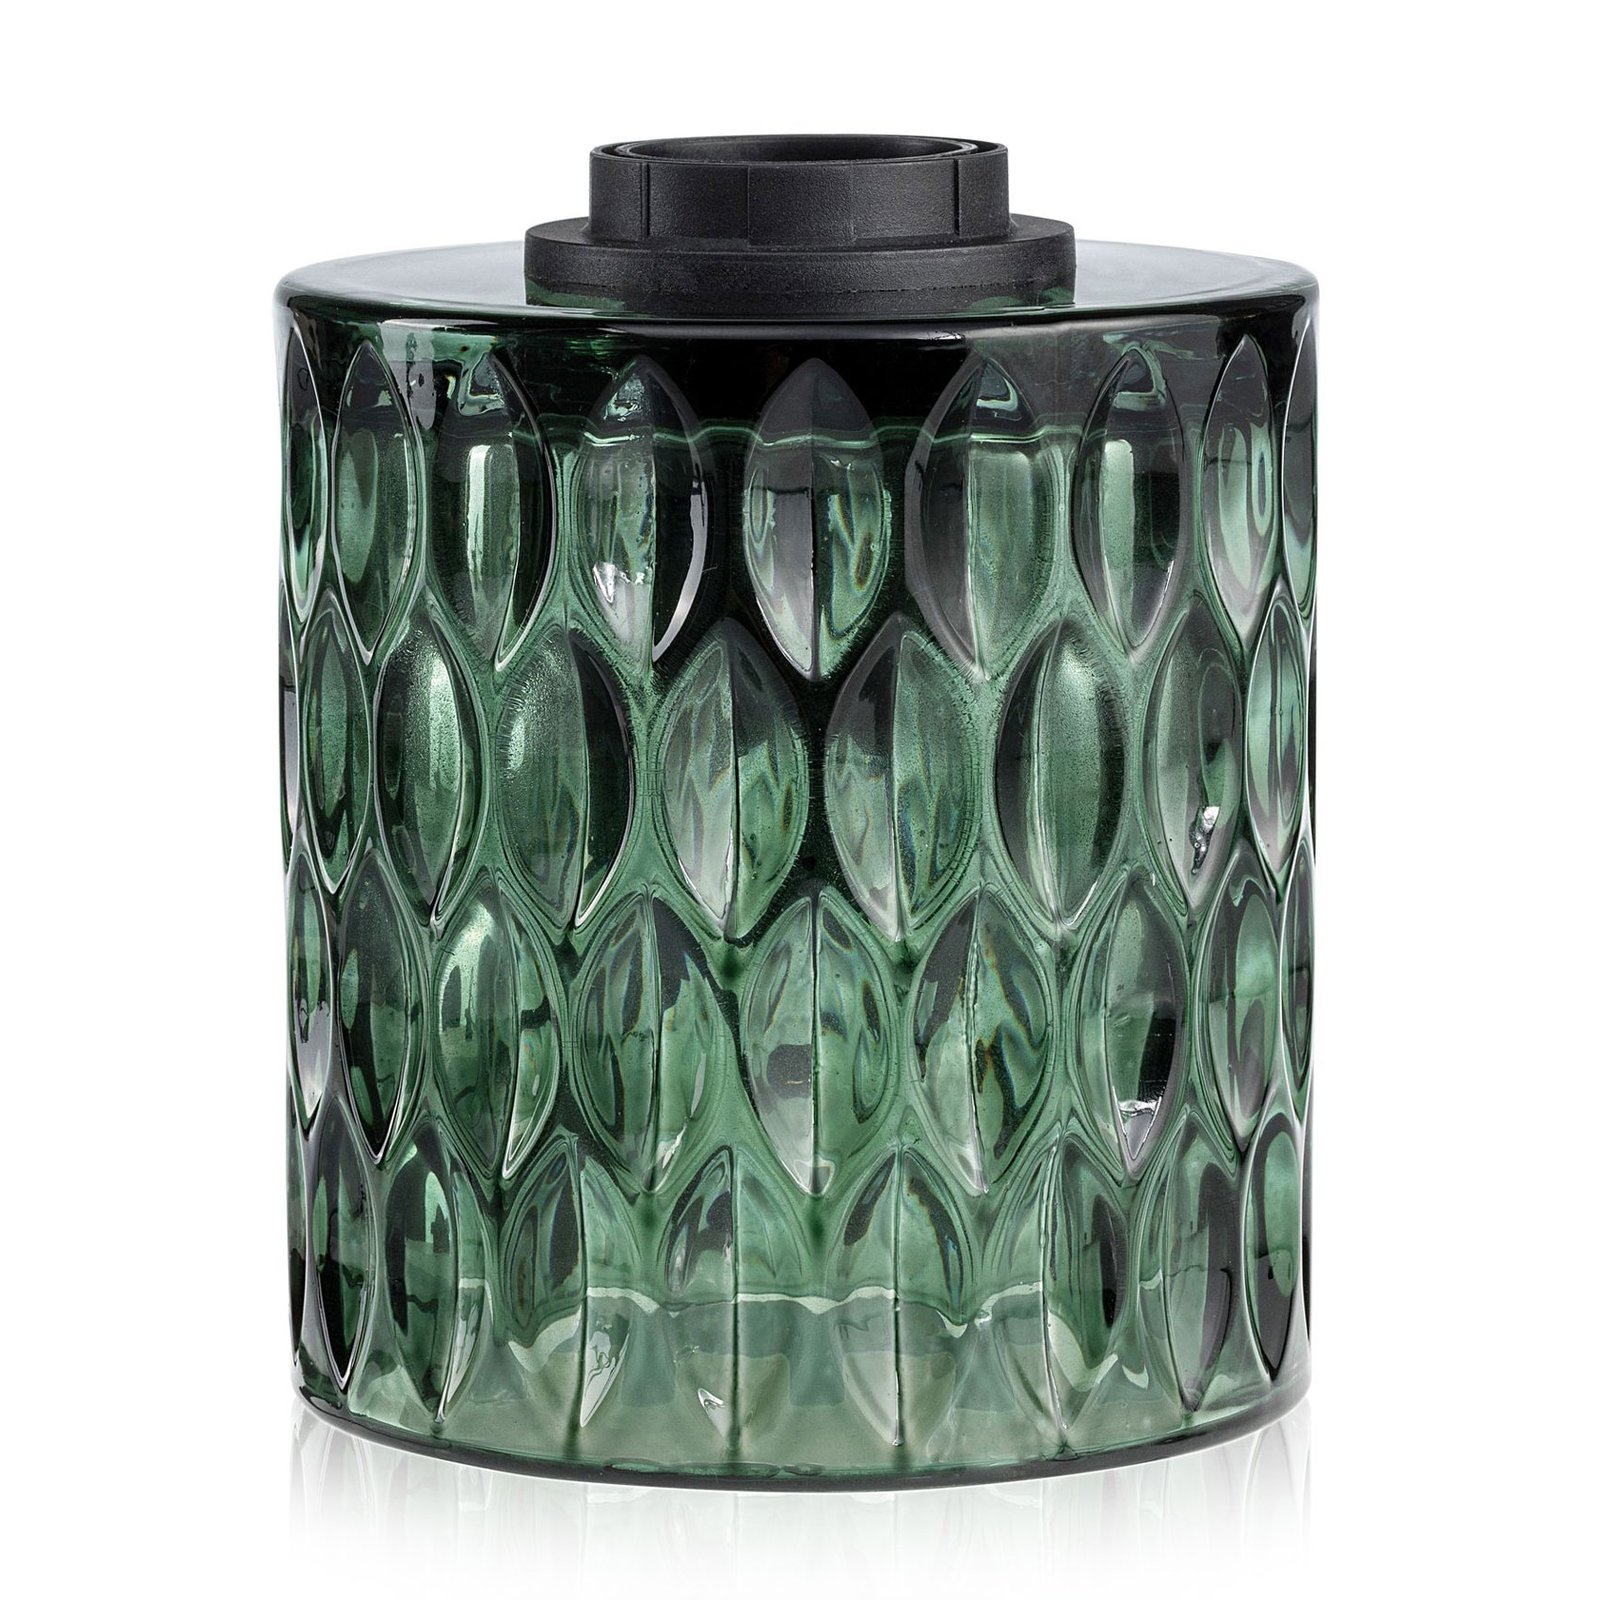 Pauleen Crystal Magic bordlampe af grønt glas